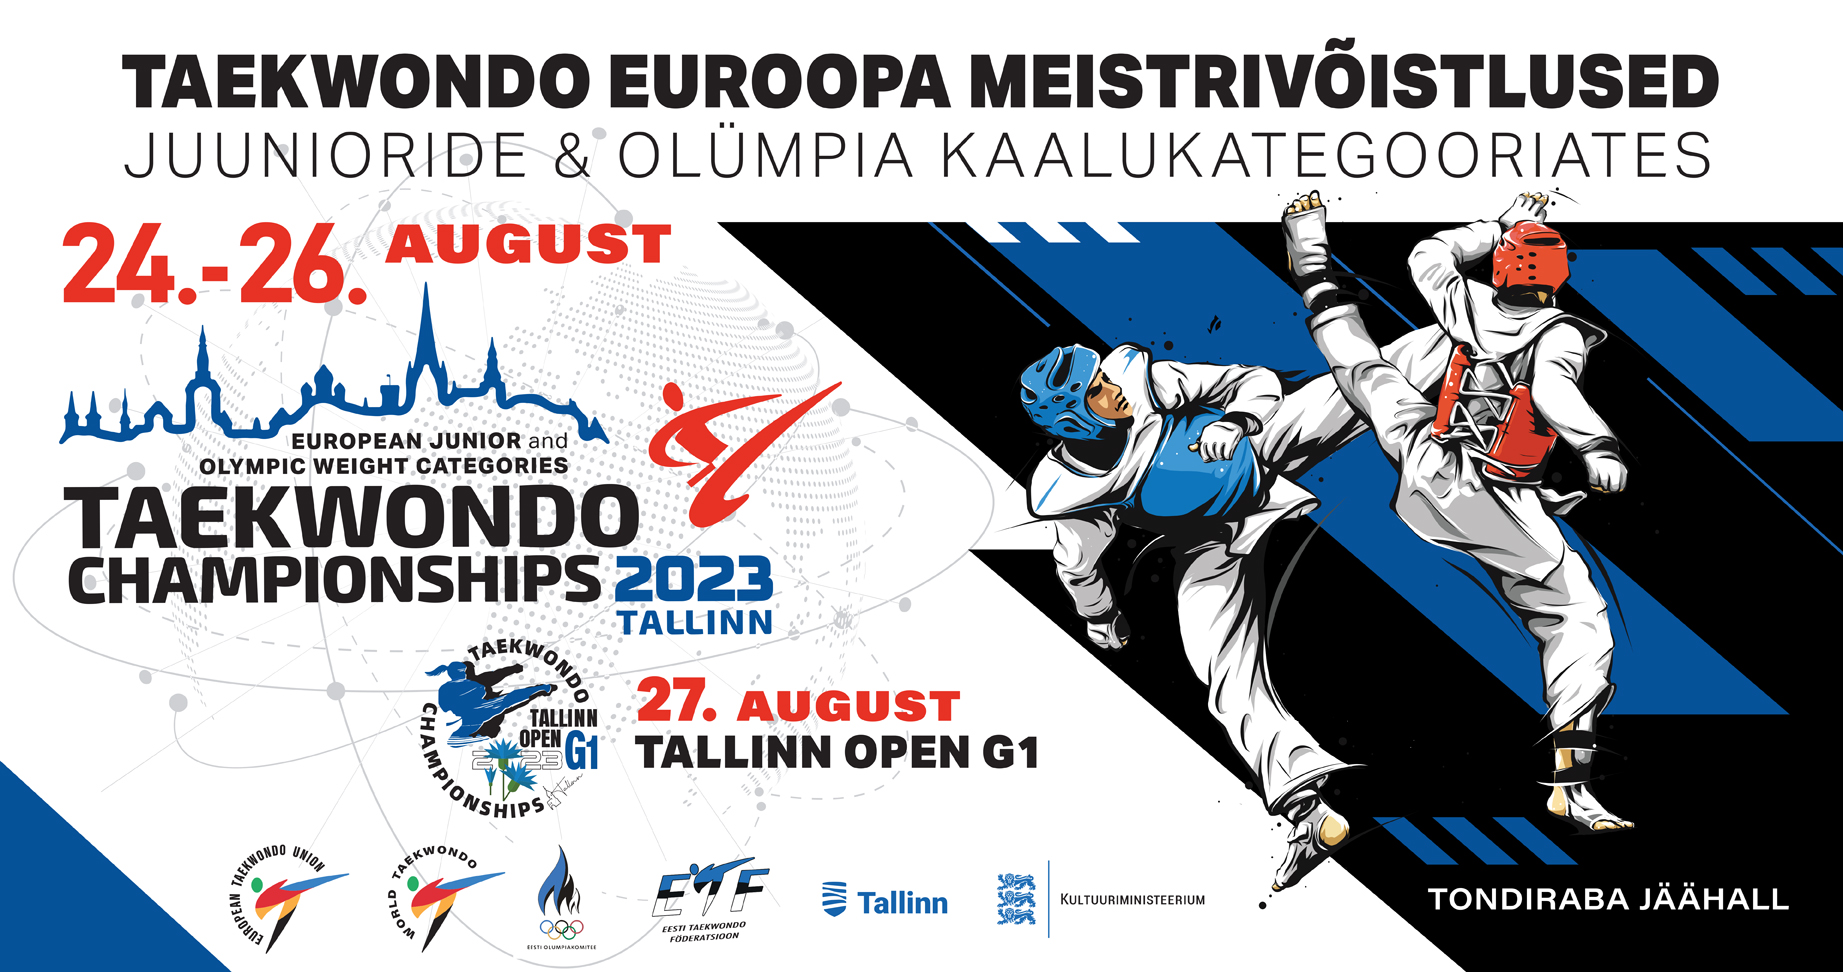 Tondiraba jäähallis toimuvad Euroopa Meistrivõistlused Taekwondos